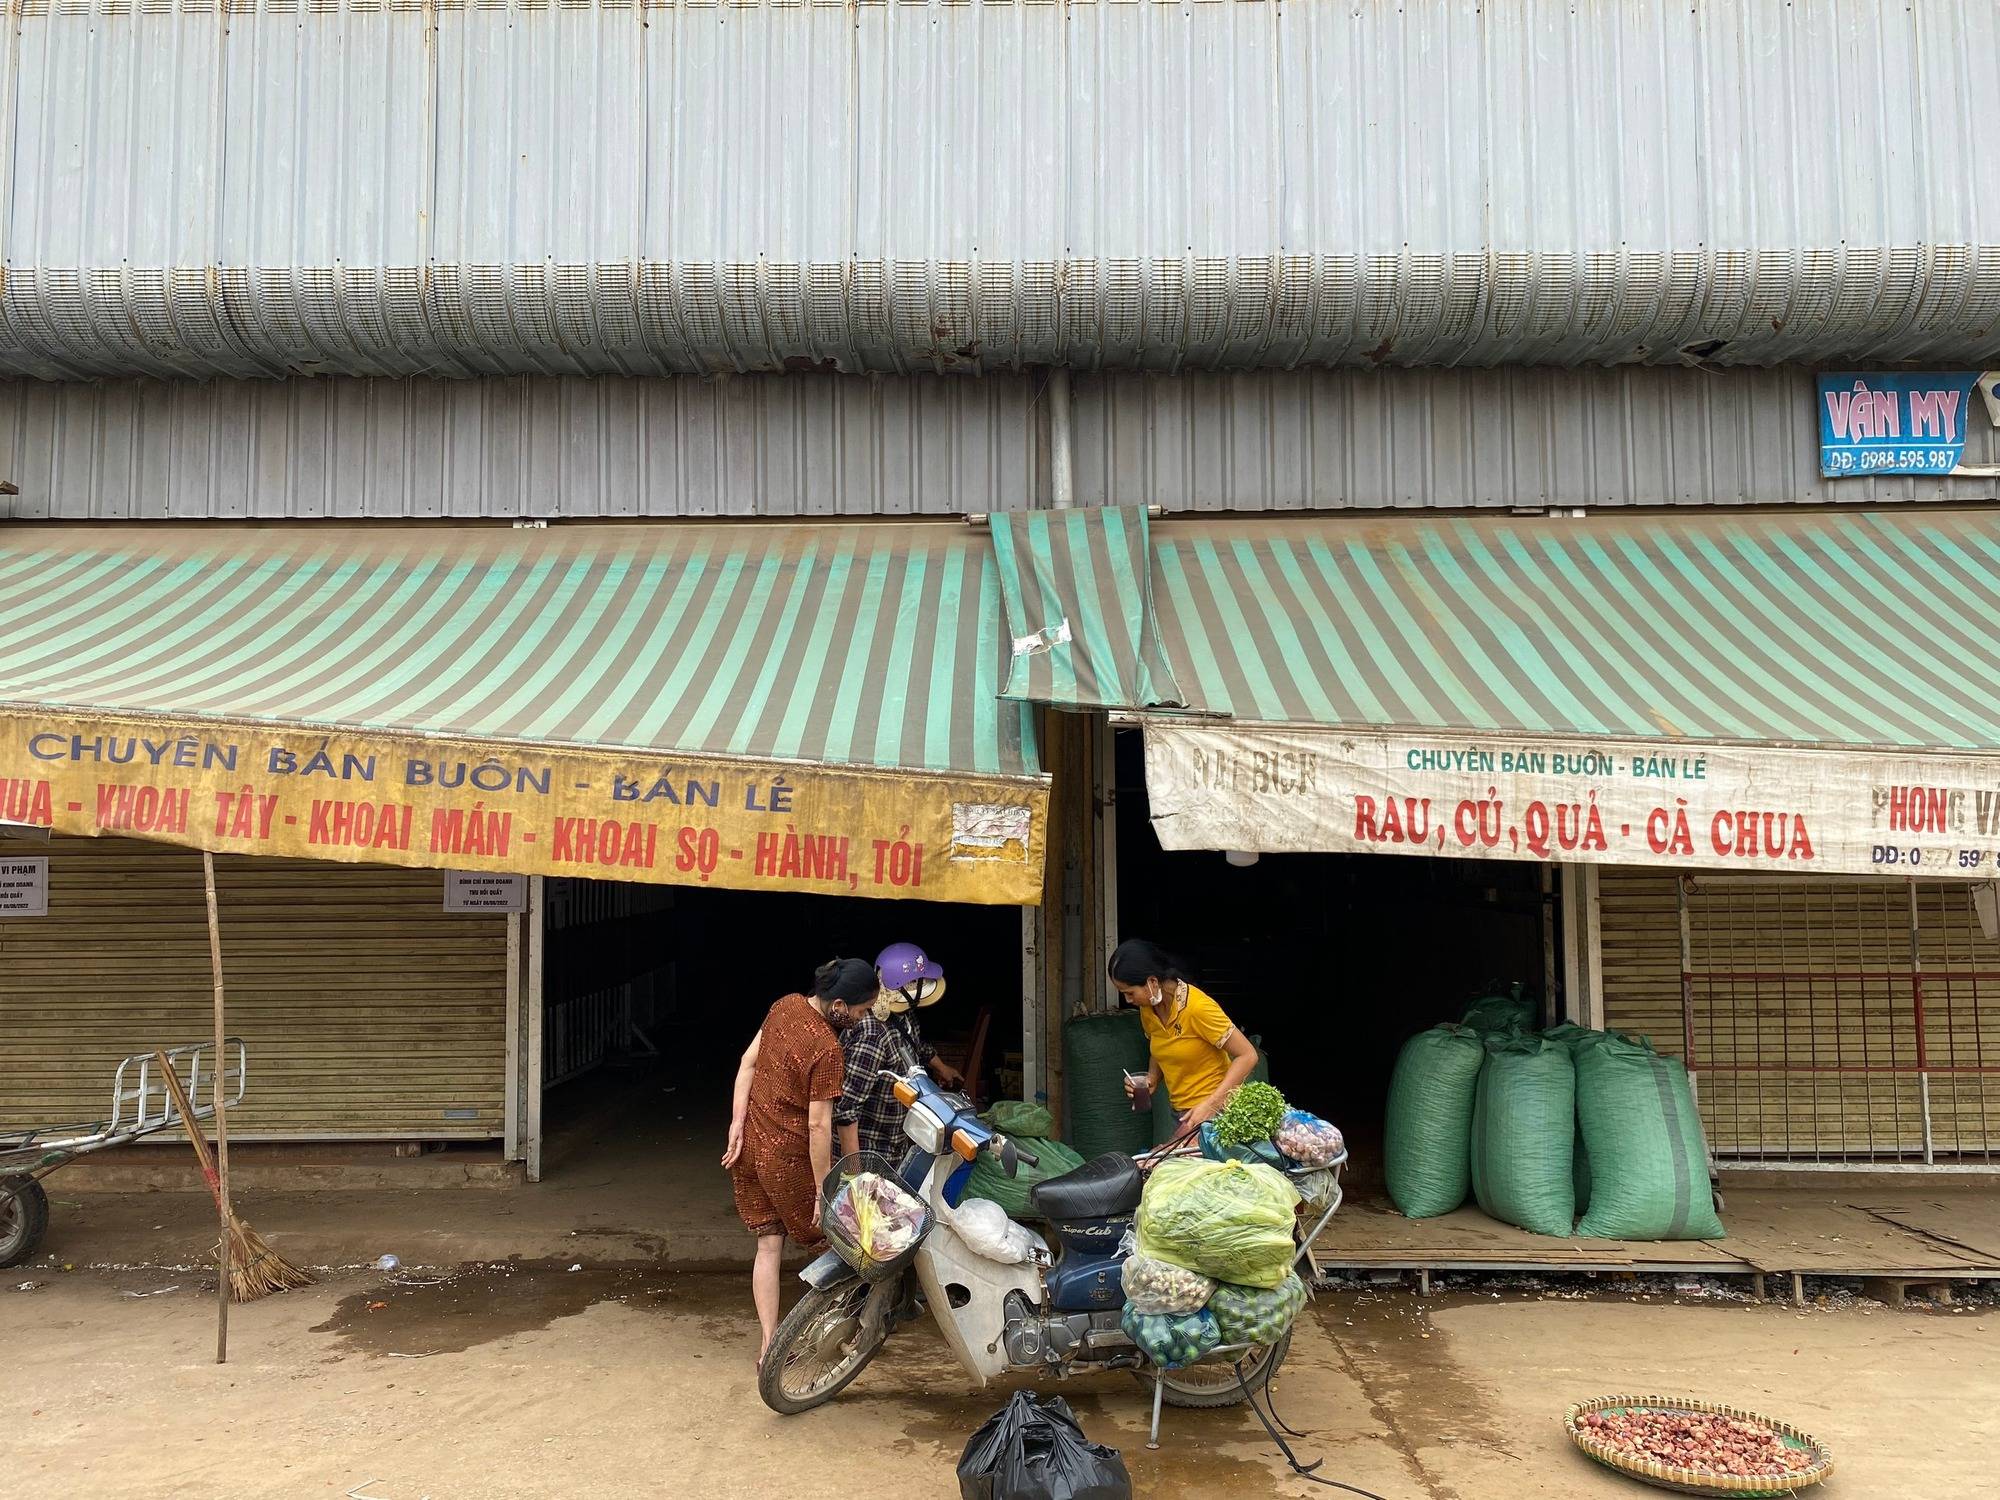 Toàn cảnh vụ việc tiểu thương bị đâm chết ở Thanh Hóa trong lúc ngủ ở chợ